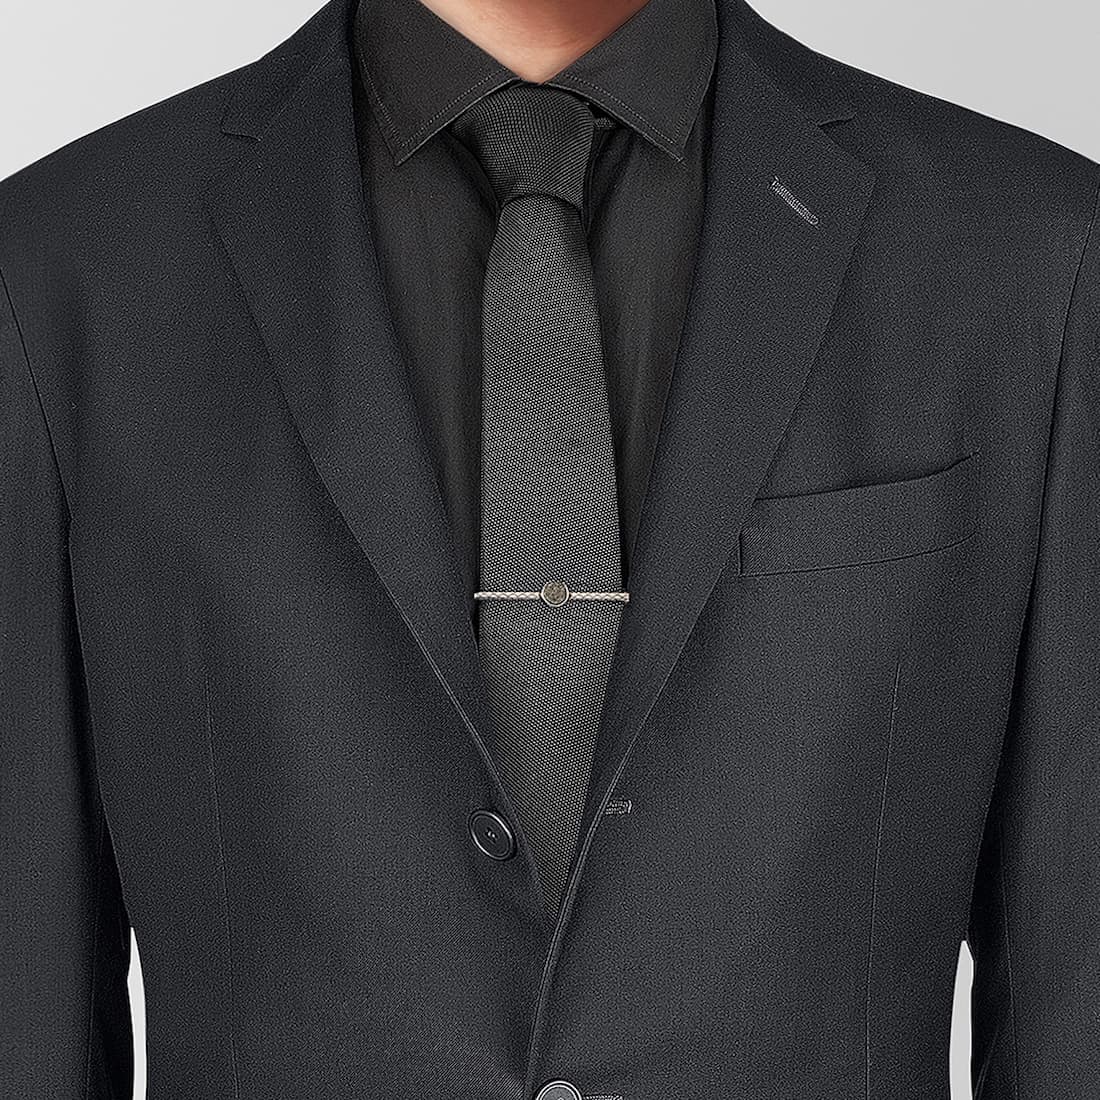 Buy Black Beaded Statement Necklace Set Online. – Odette